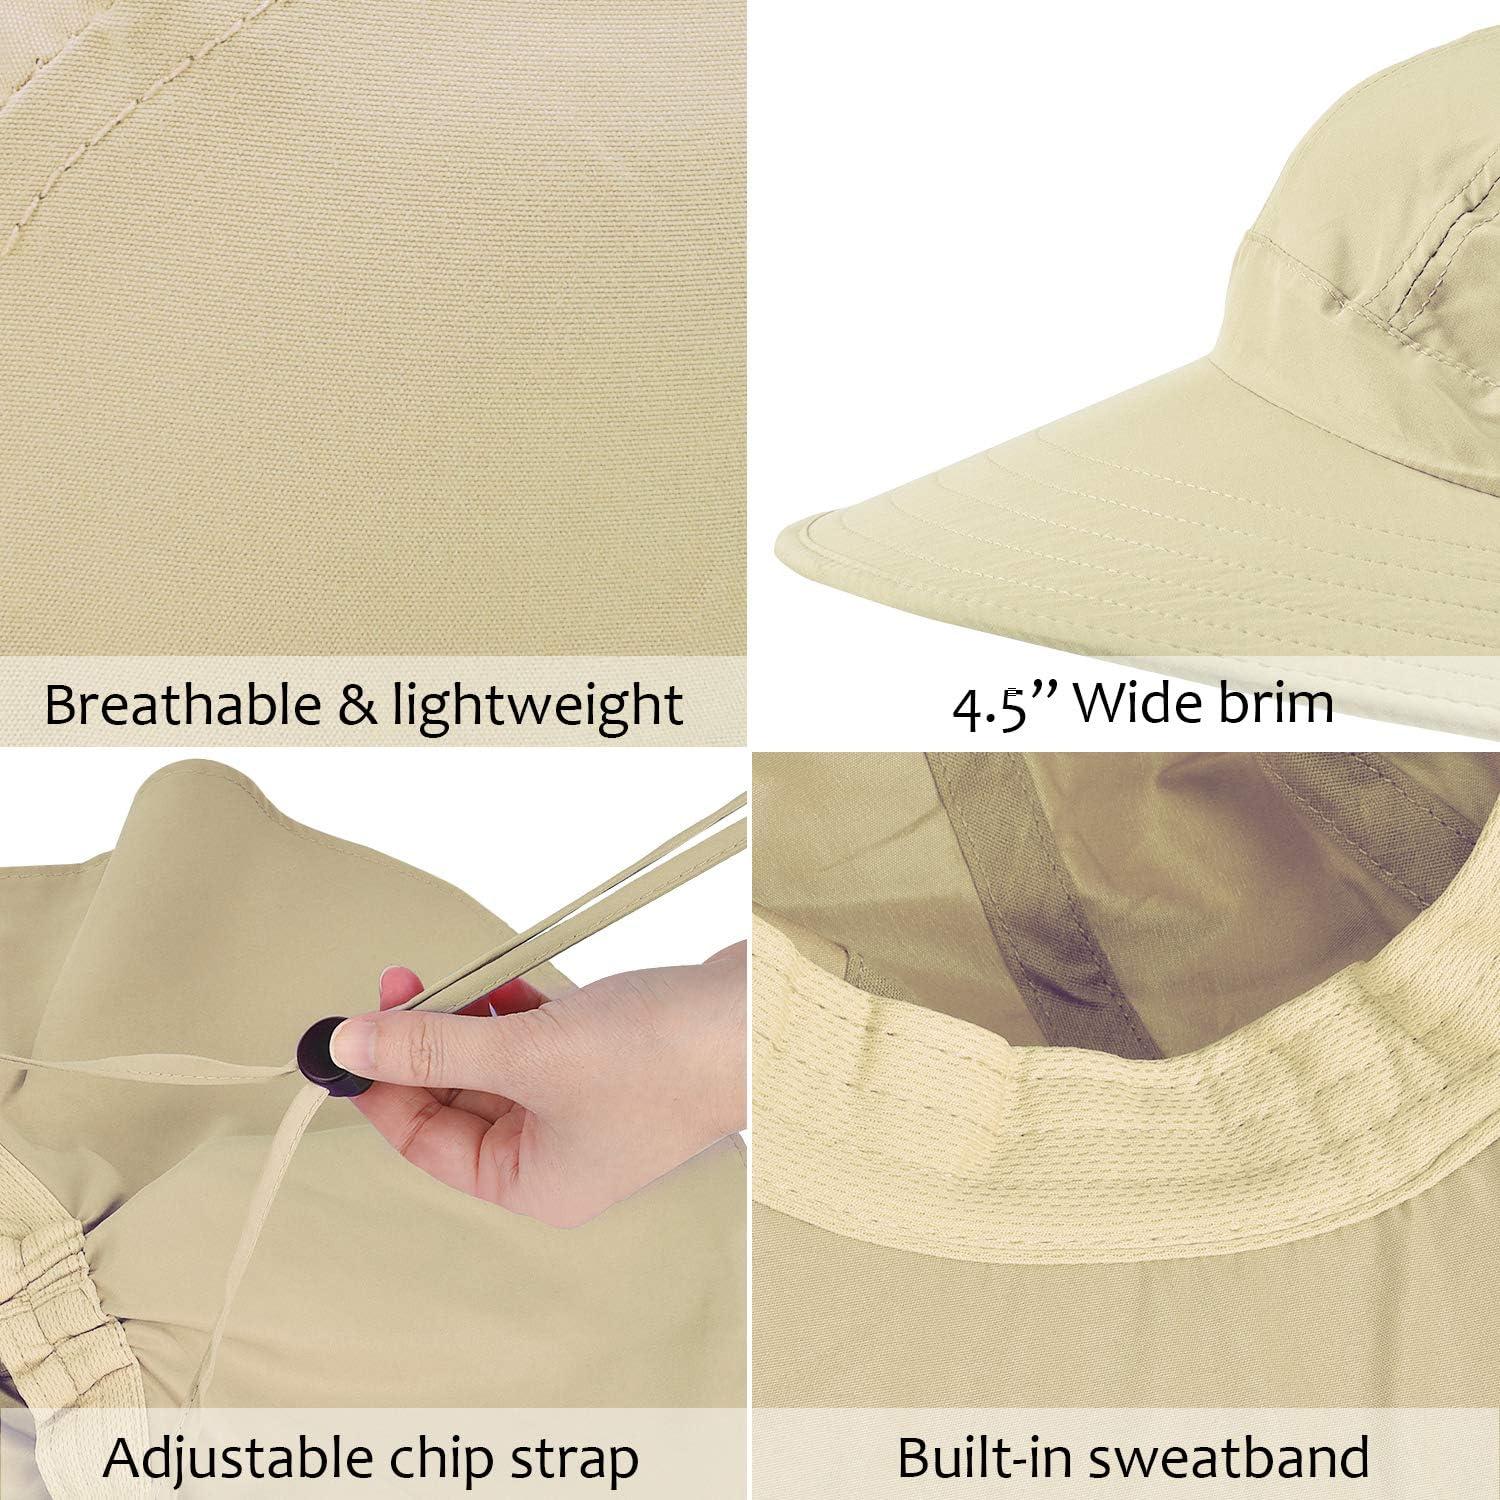 Solaris Women's Sun Hats Neck Flap Large Brim UV Protection Foldable Fishing  Hiking Cap Tan